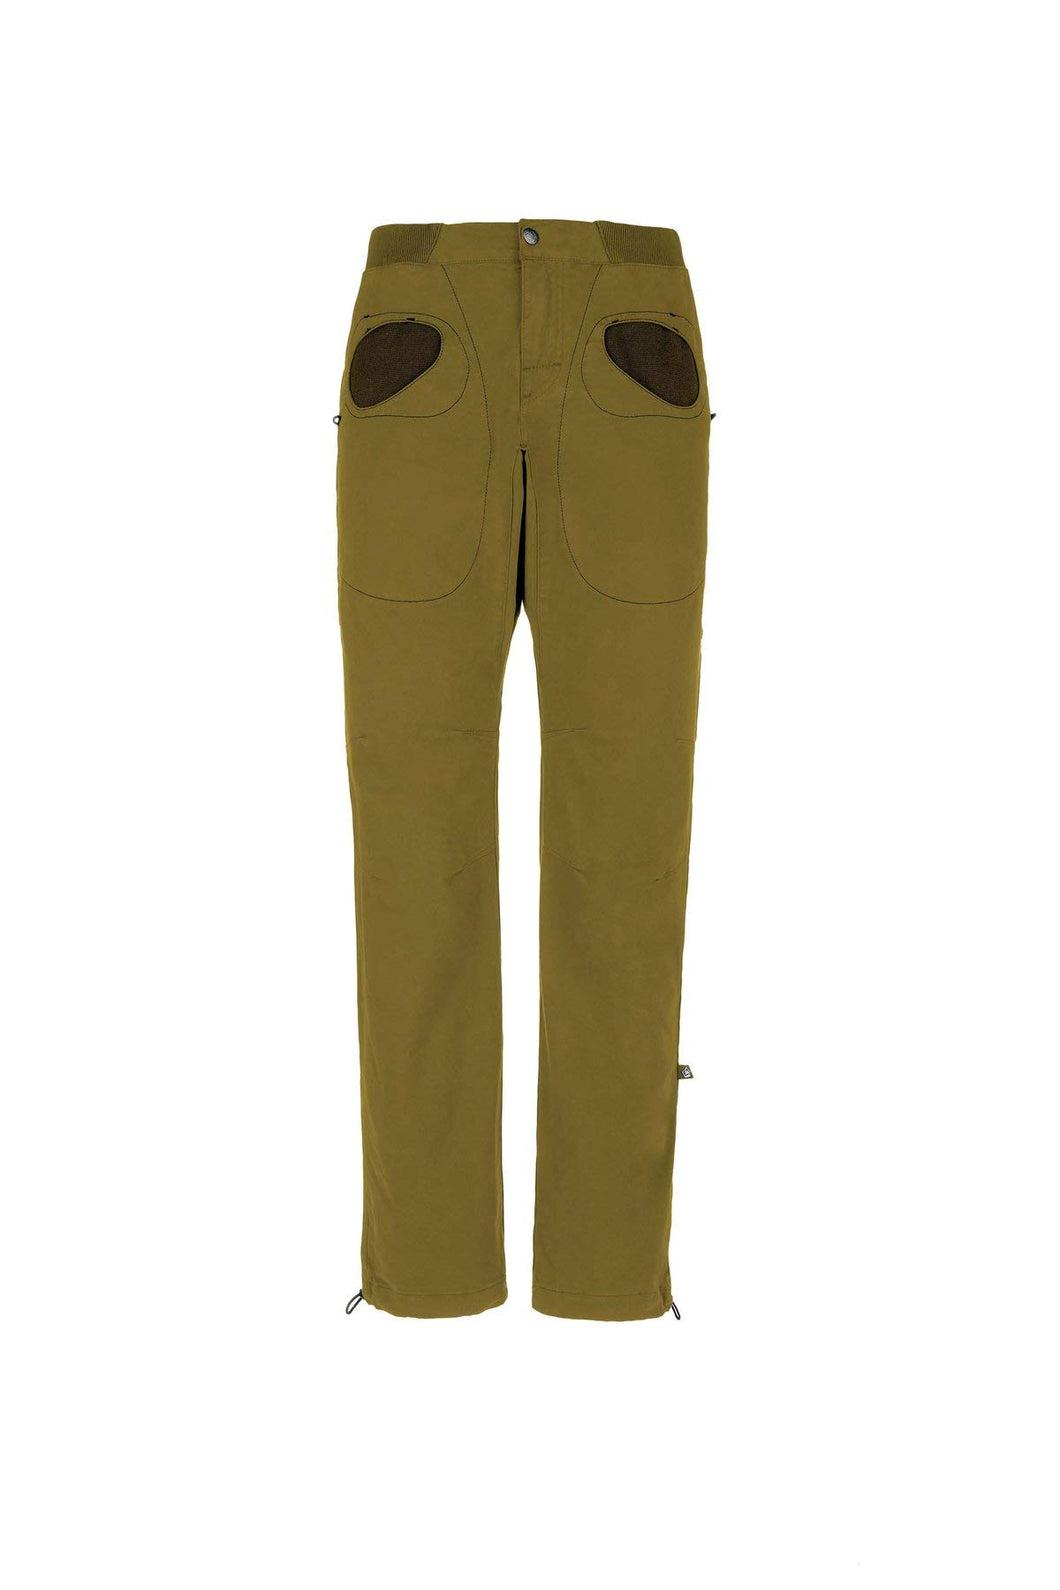 E9 Enove Rondo Slim Colore Pistacchio Verde- Pantalone da Arrampicata Sportiva Uomo …